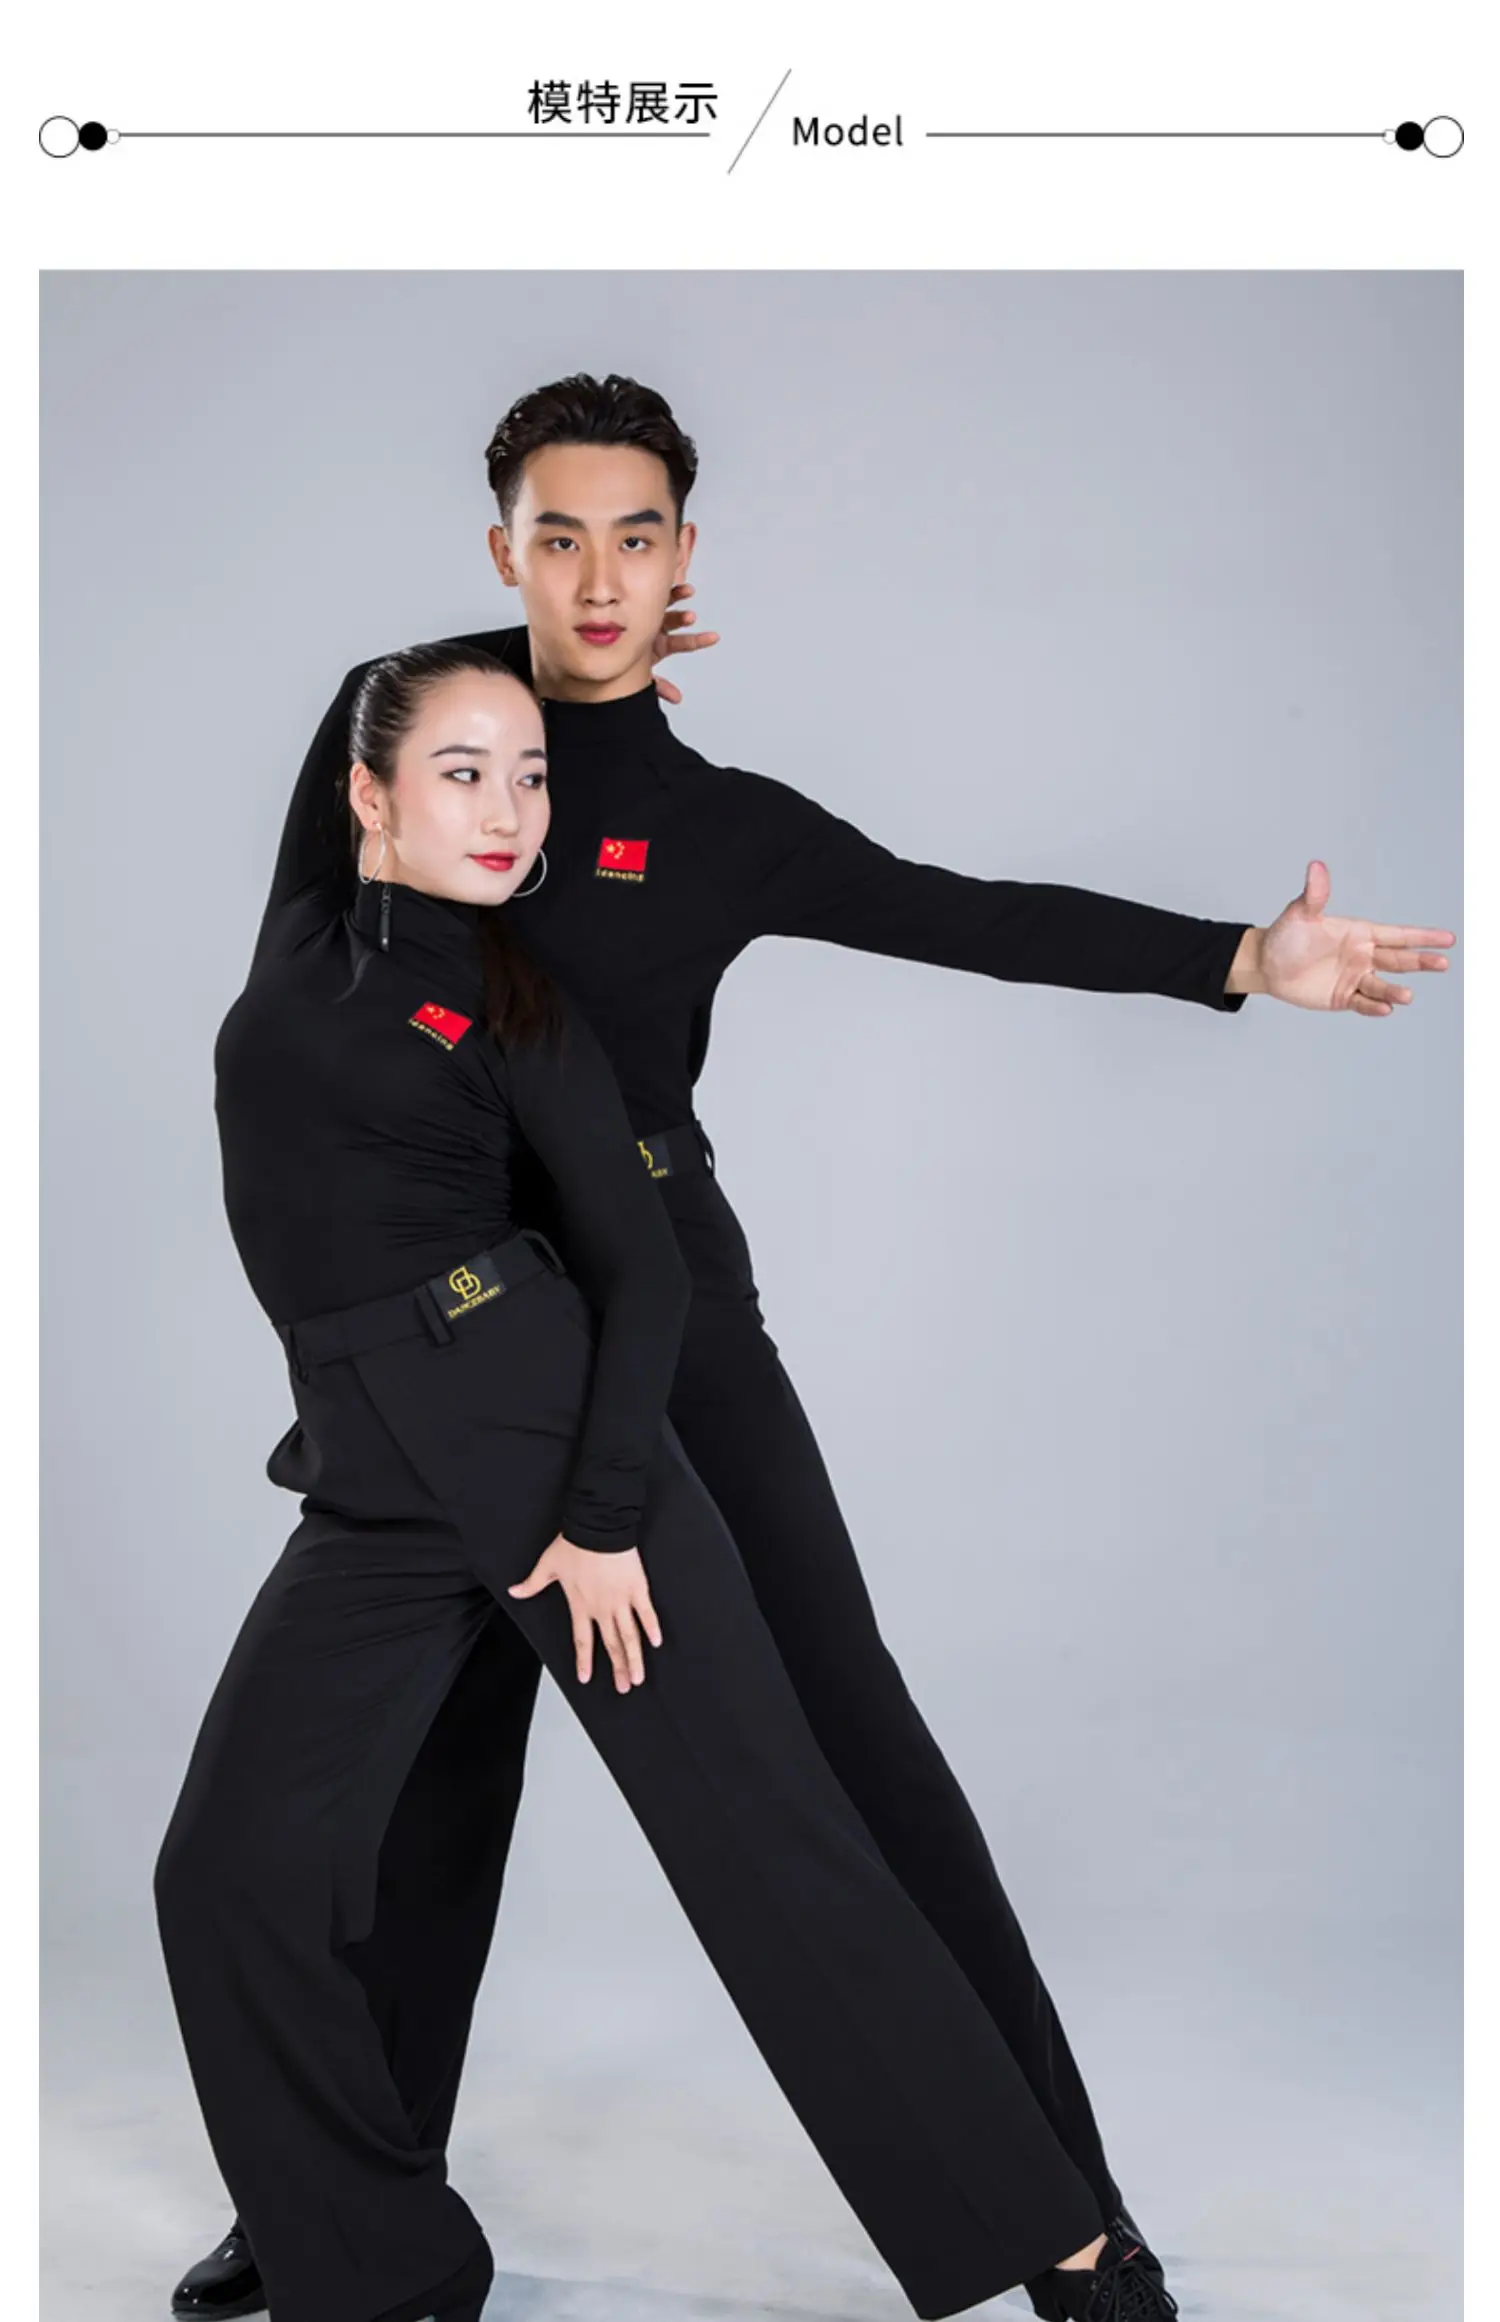 nacional dança desempenho roupas treinamento dança moderna ampla perna calças da596